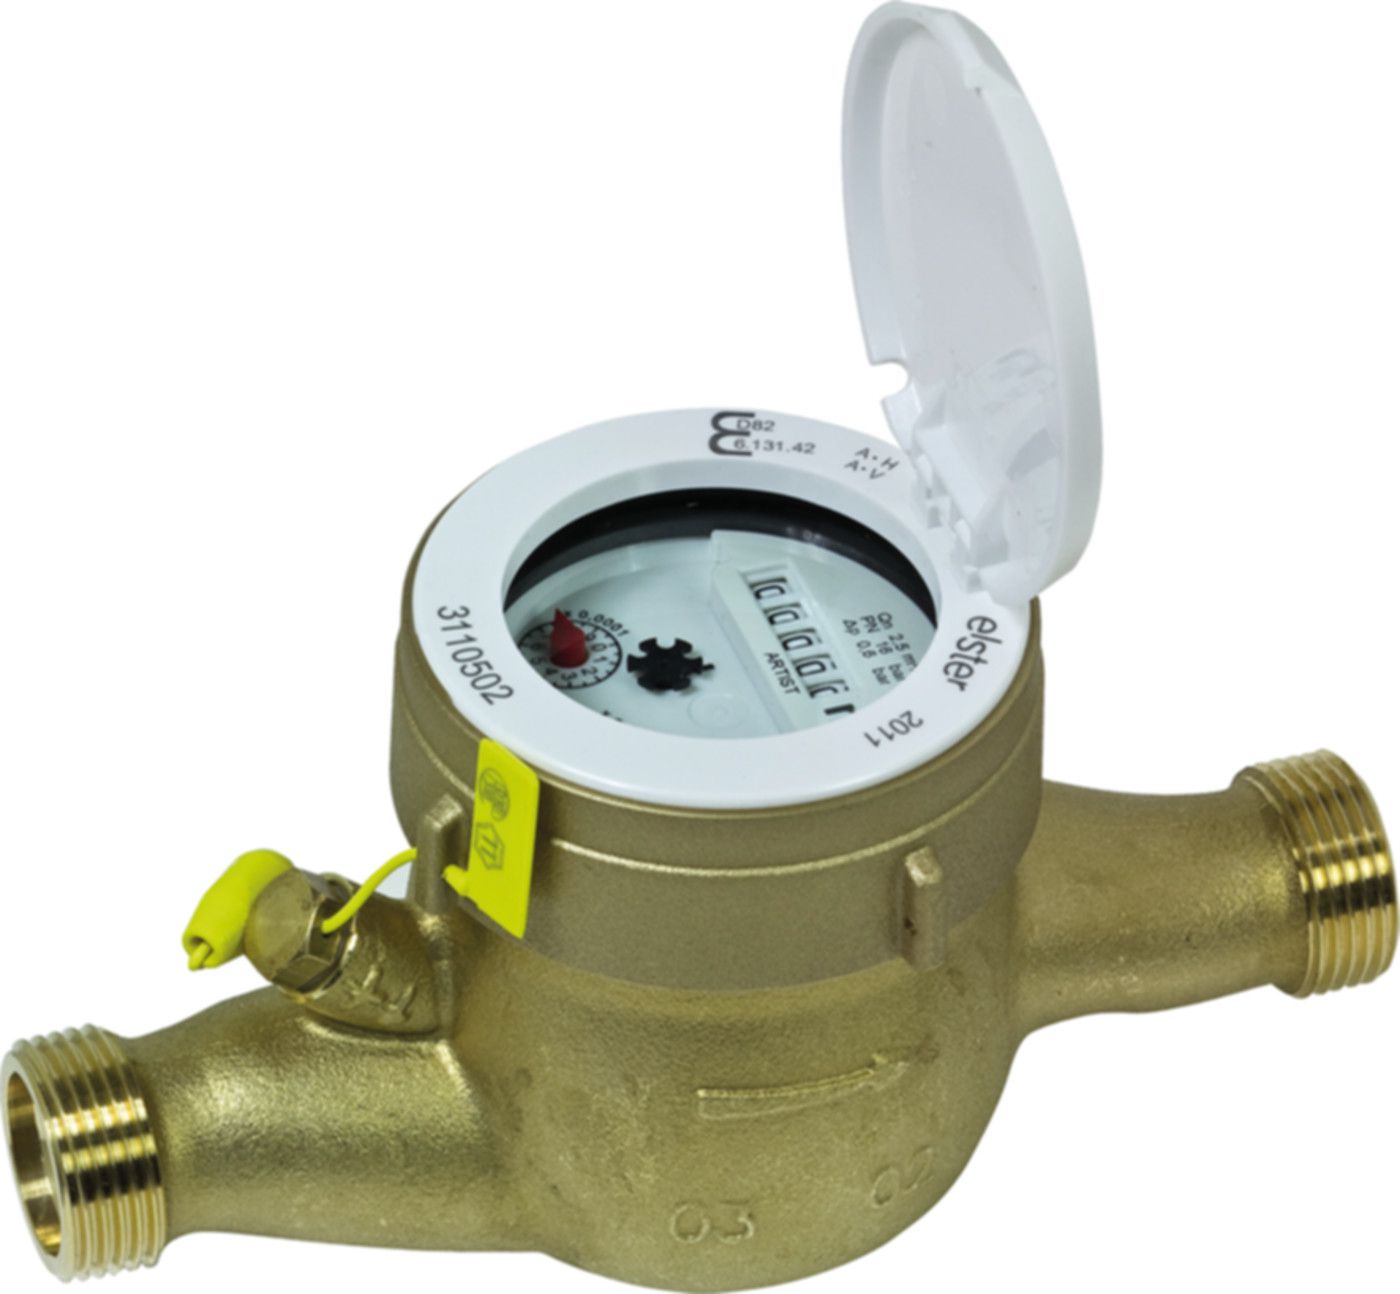 Hauswasserzähler warm F 10.0 m3/h L = 200 mm G 2" blombiert 16787 - ISTA - Wärme- / Wasserzähler